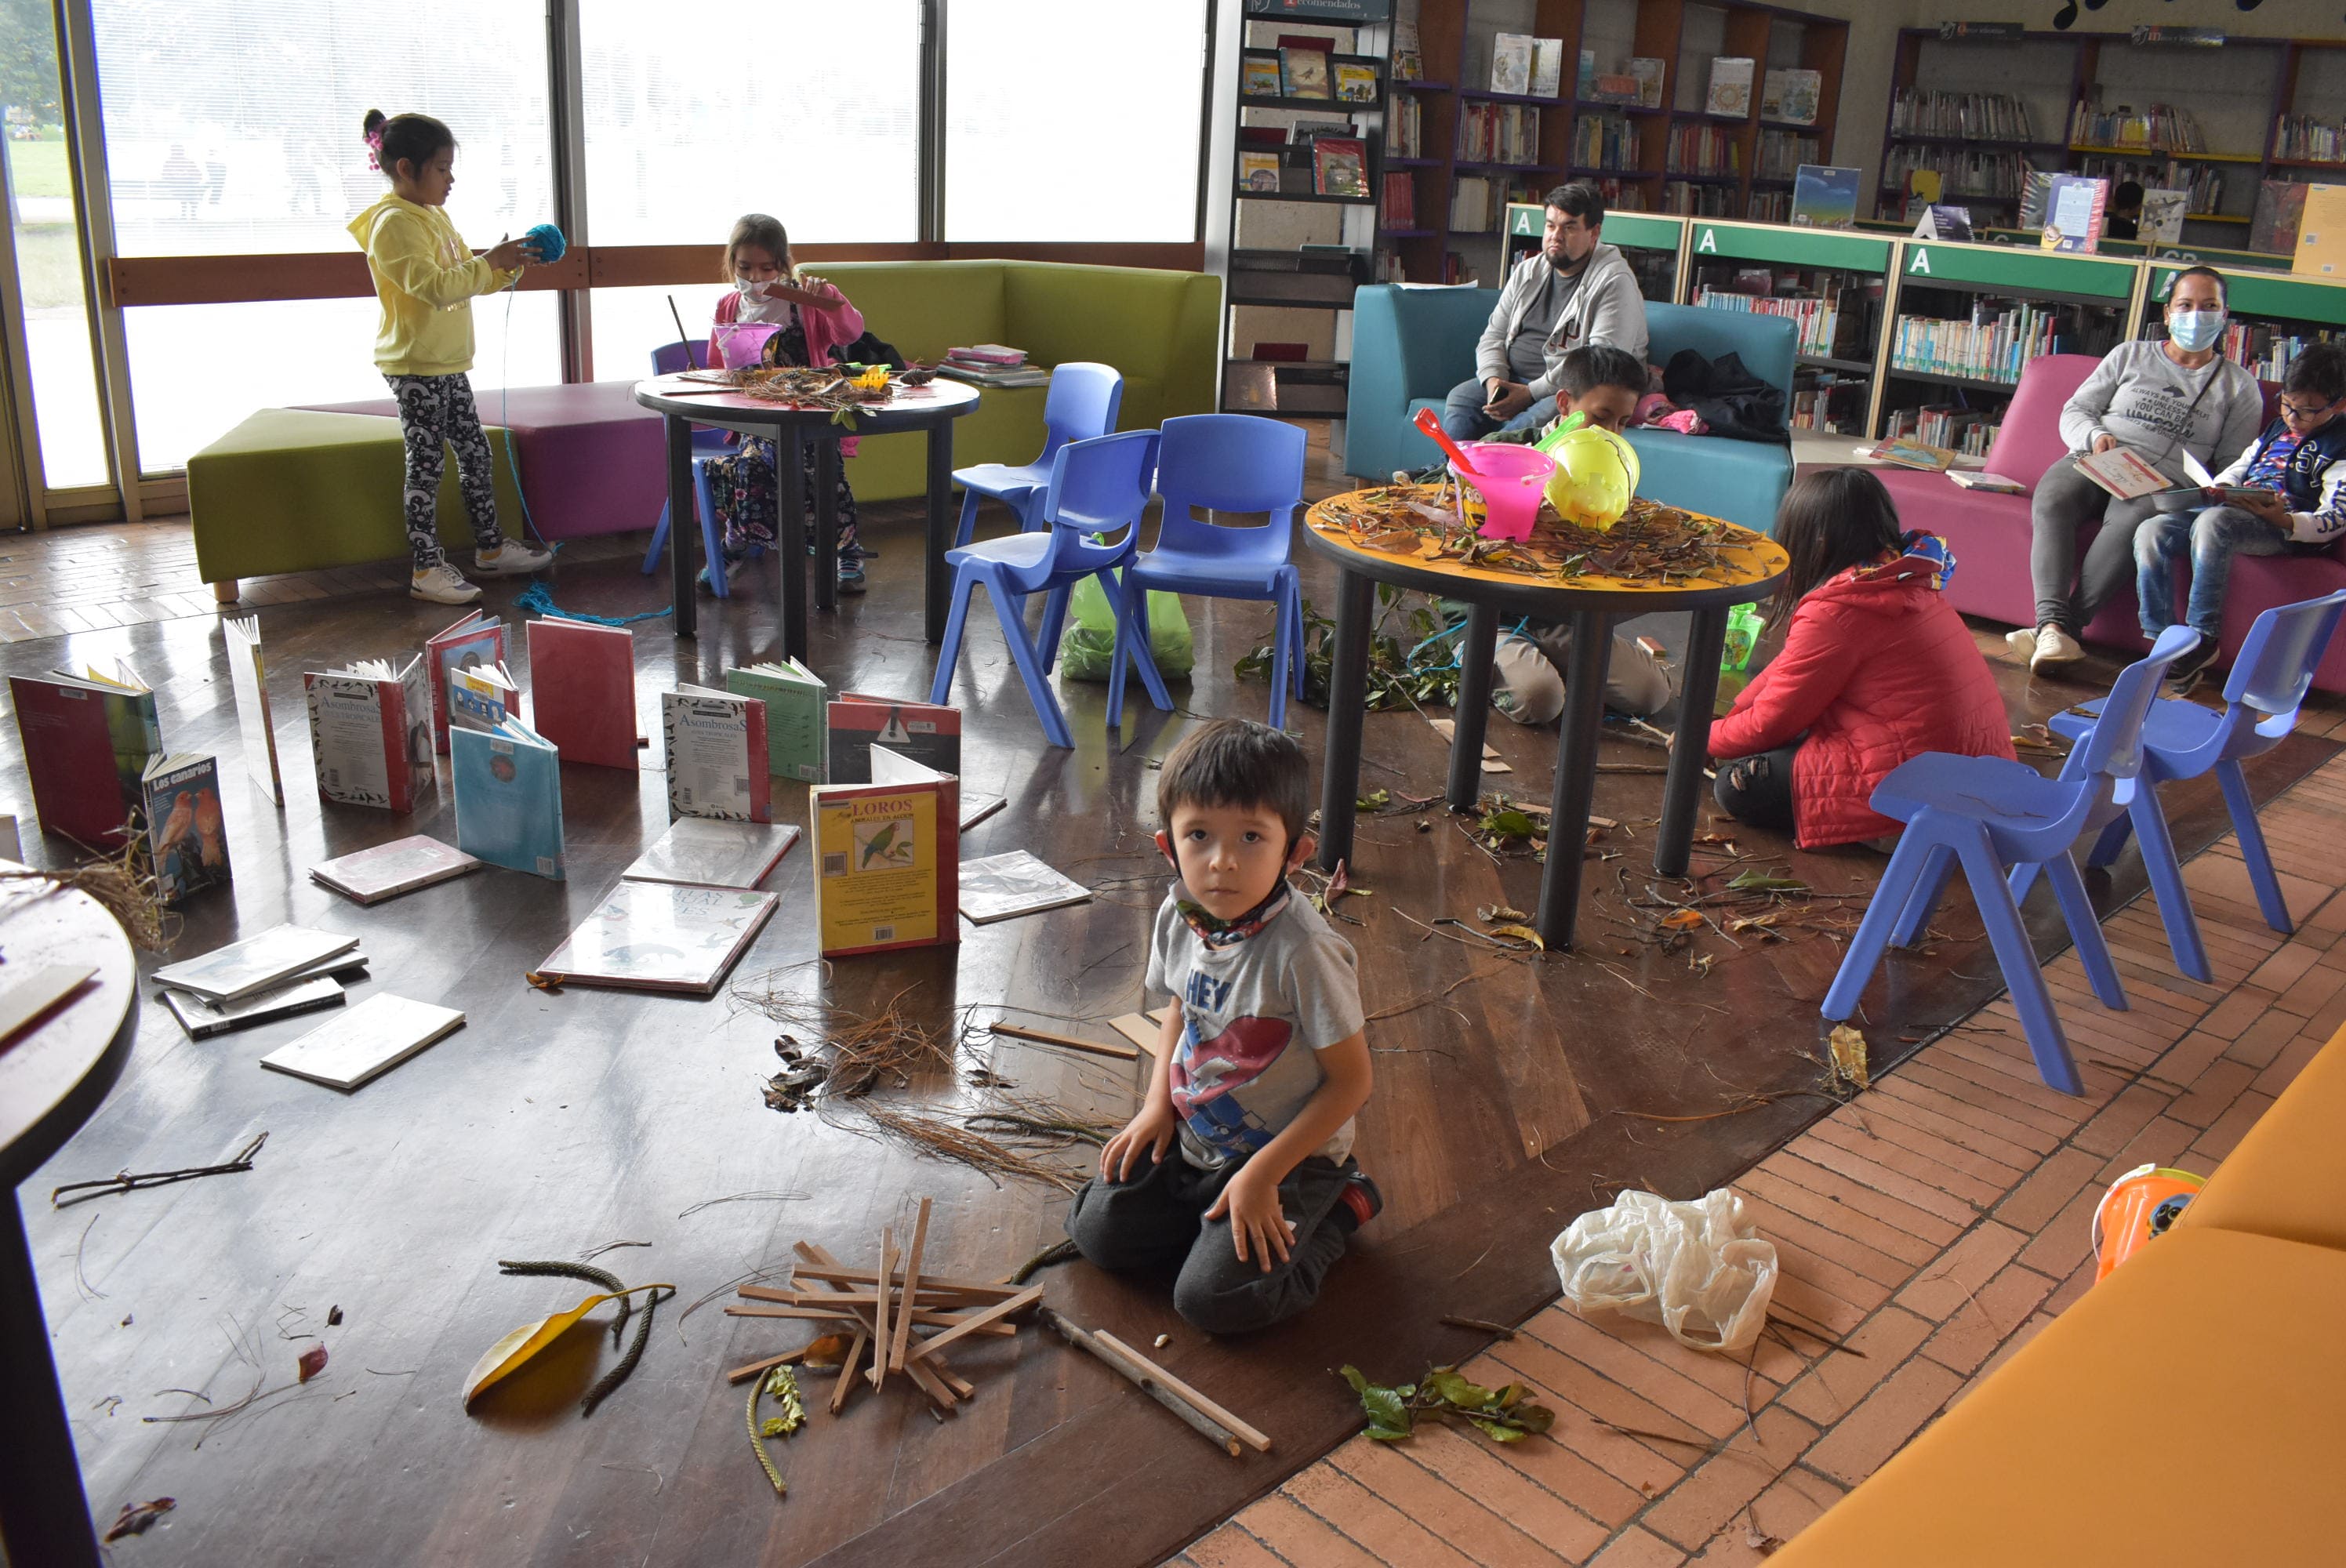 niños jugando y explorando objetos como libros, ramas, hojas, lapices, en medio del salón de una biblioteca.